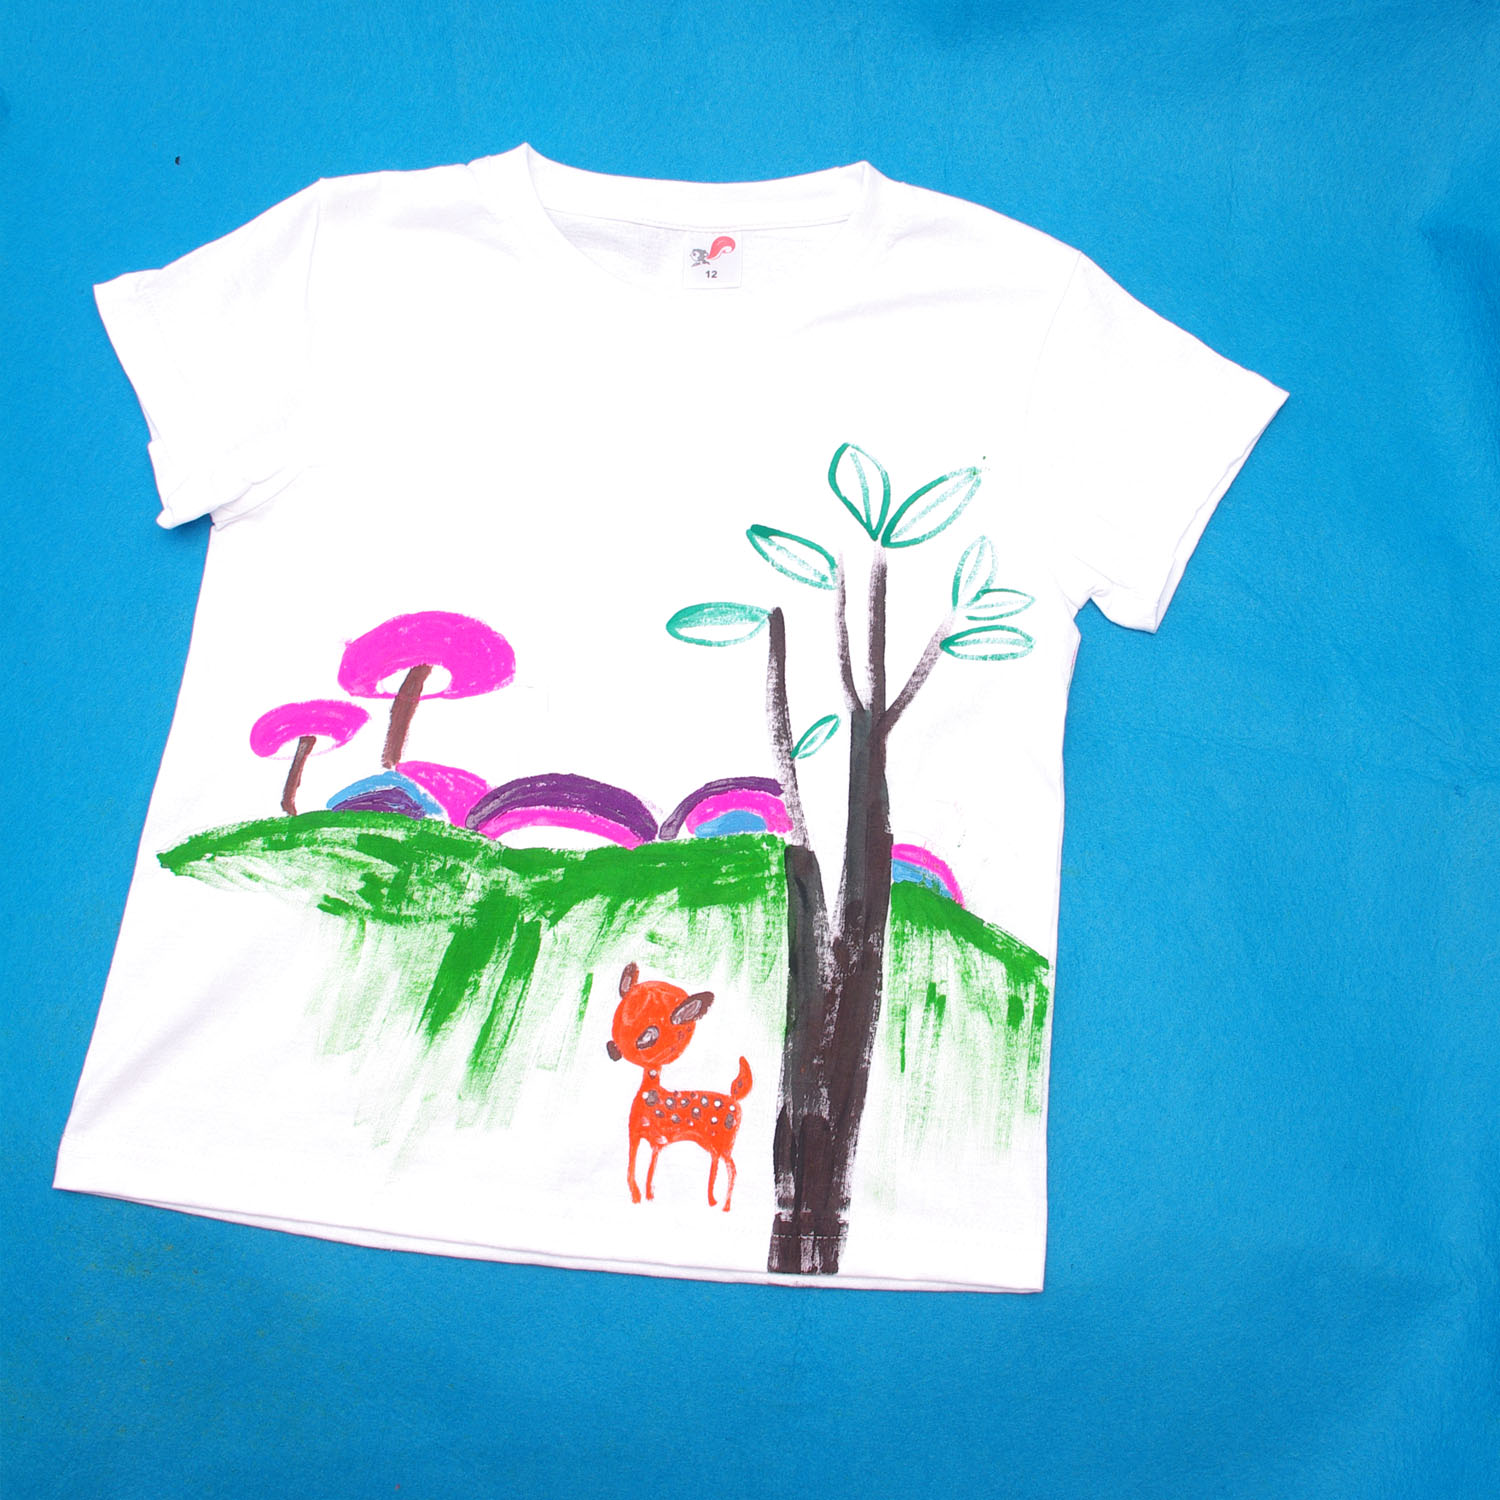 儿童手绘白色t恤衫幼儿园手工diy涂色涂鸦绘画空白纯棉加厚文化衫